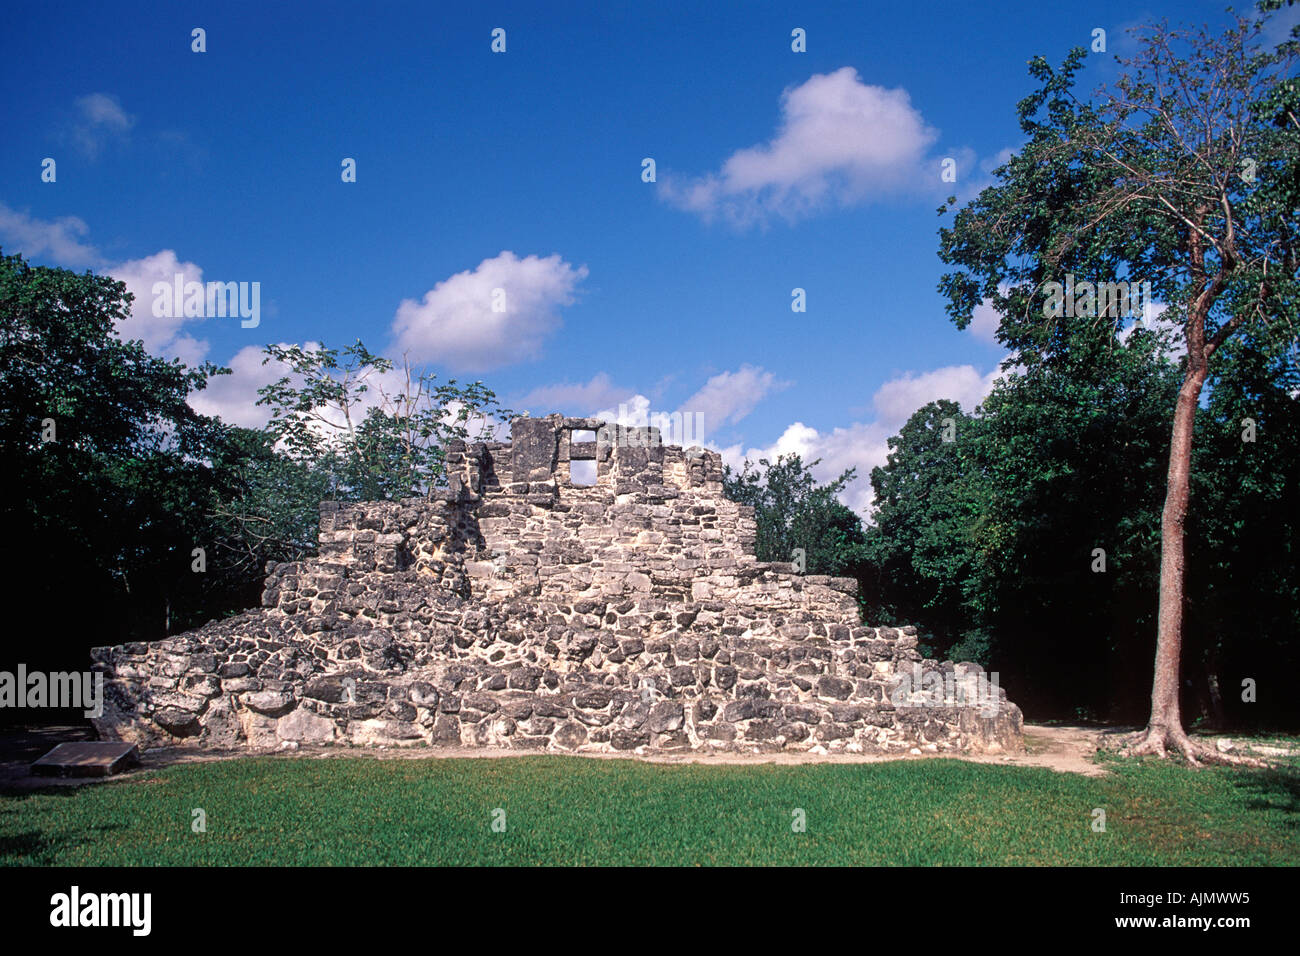 Ruines de la San Gervasio site archéologique maya sur l'île de Cozumel au Mexique. Banque D'Images